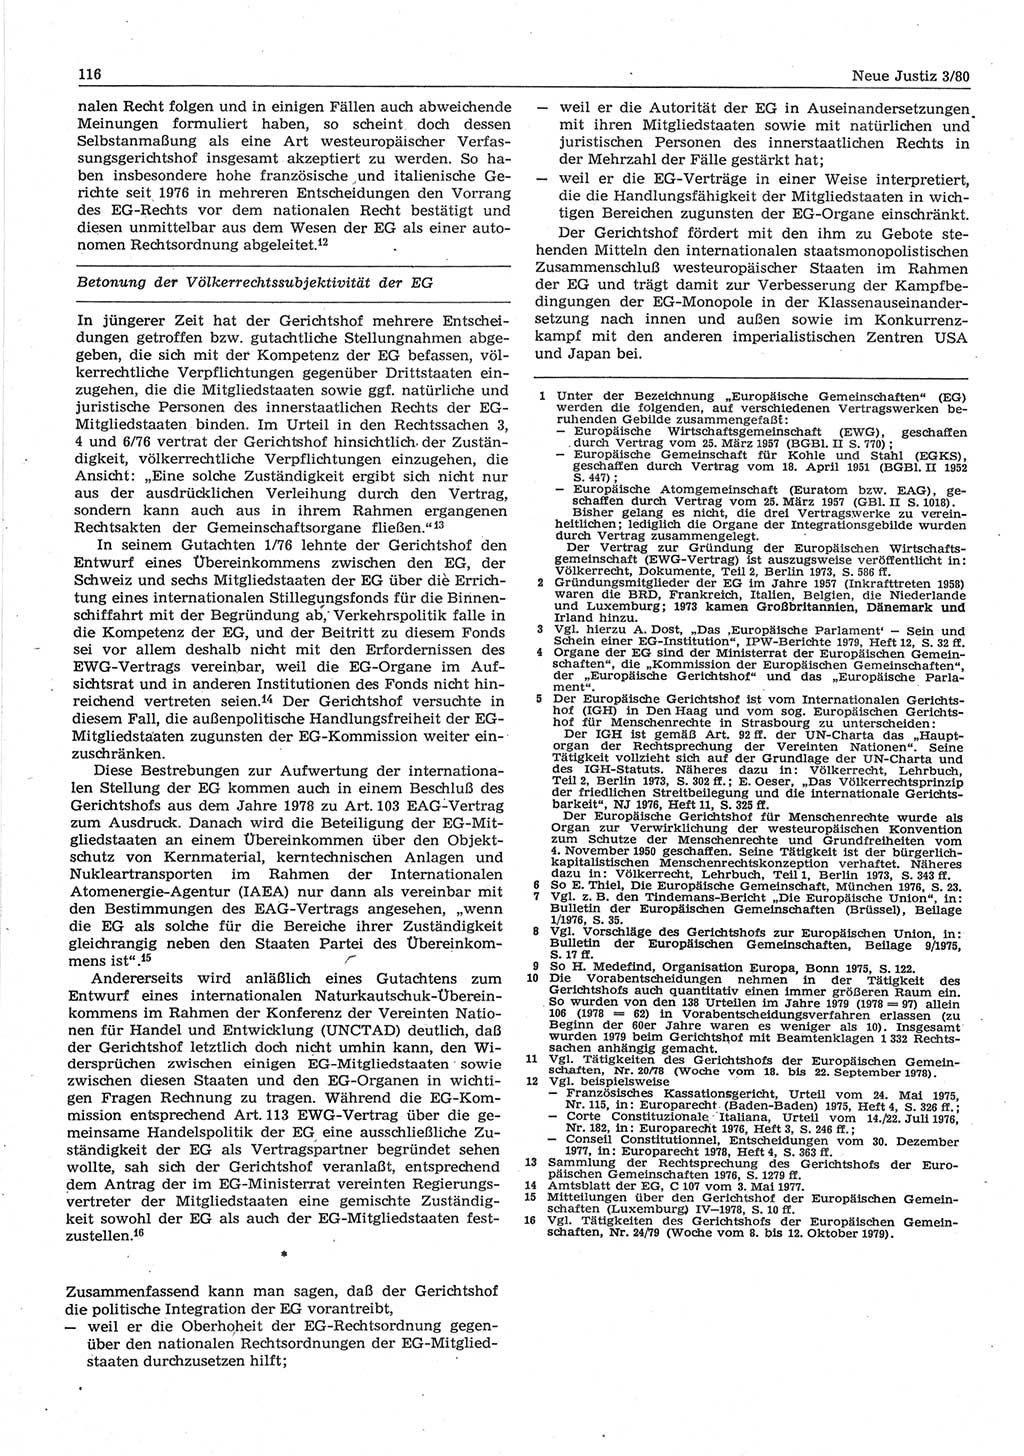 Neue Justiz (NJ), Zeitschrift für sozialistisches Recht und Gesetzlichkeit [Deutsche Demokratische Republik (DDR)], 34. Jahrgang 1980, Seite 116 (NJ DDR 1980, S. 116)